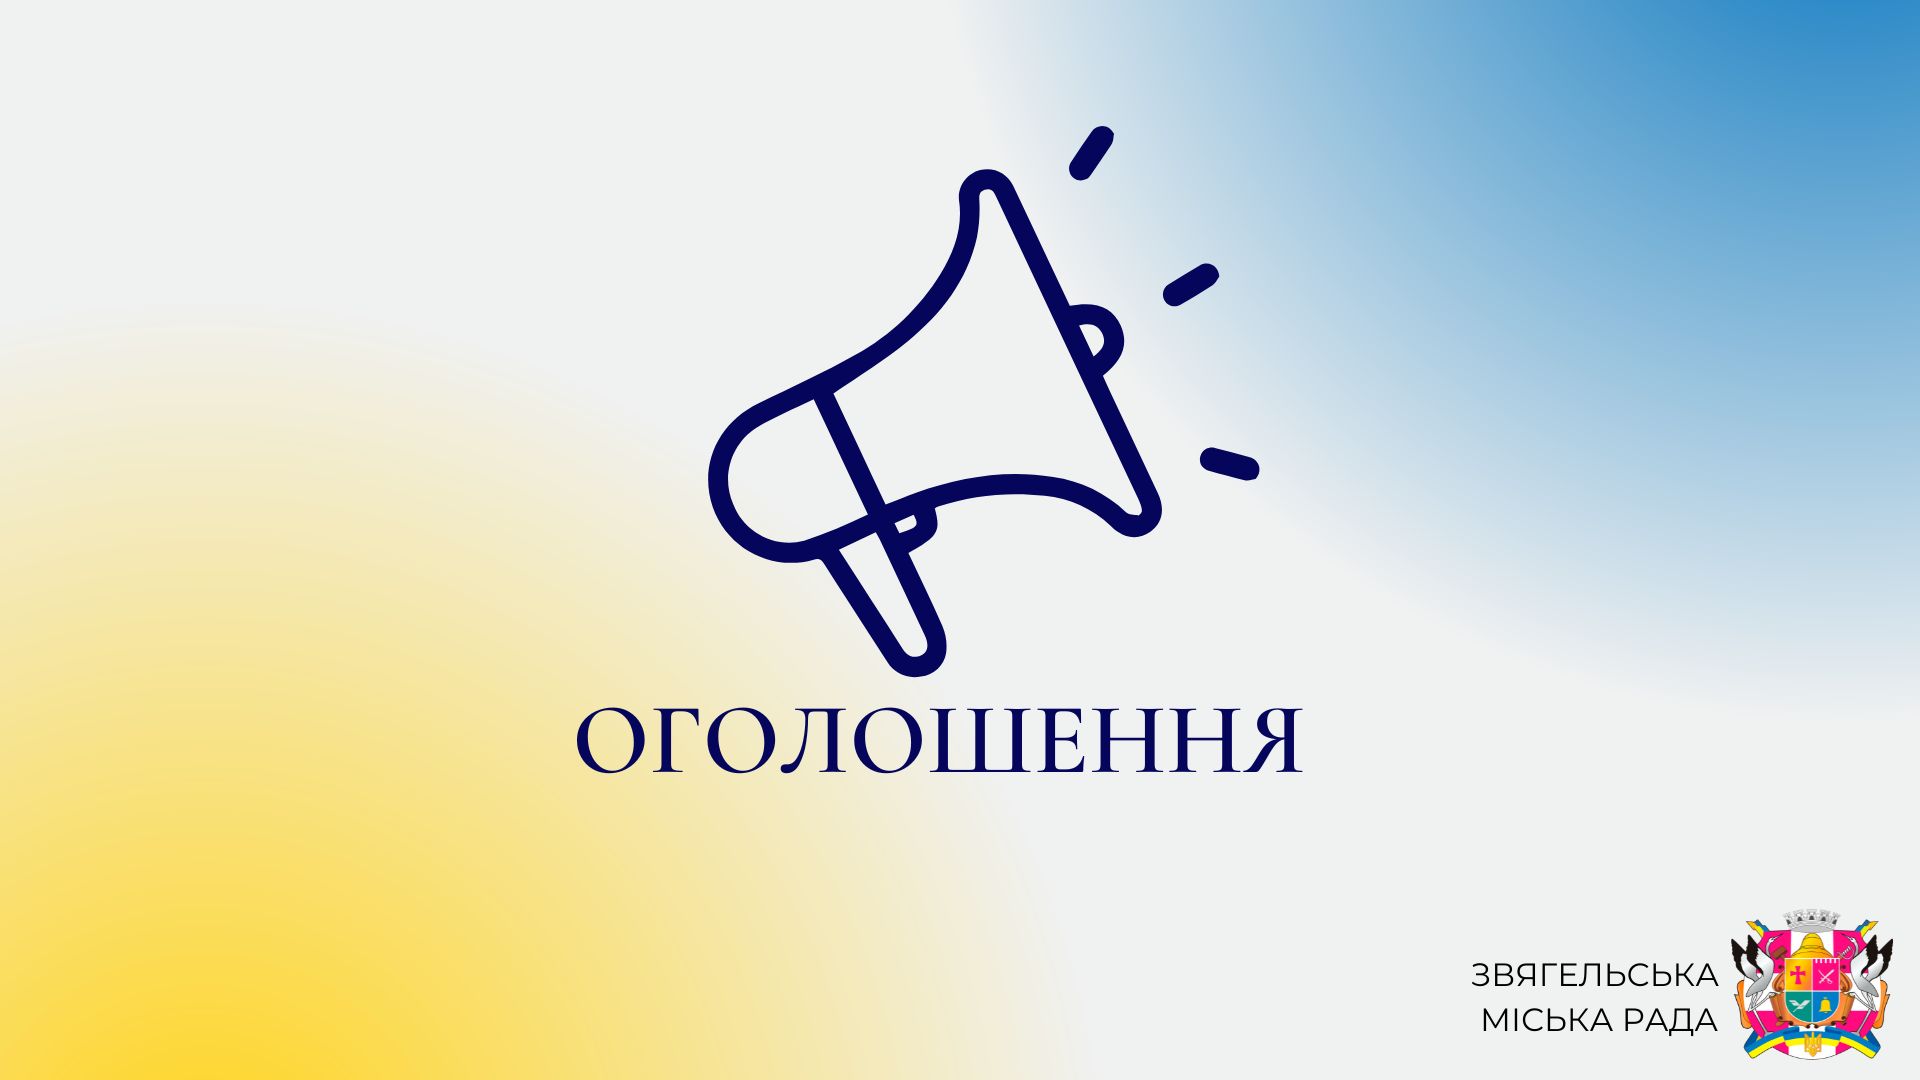 Одноразова грошова допомога на оздоровлення  дітям захисників України